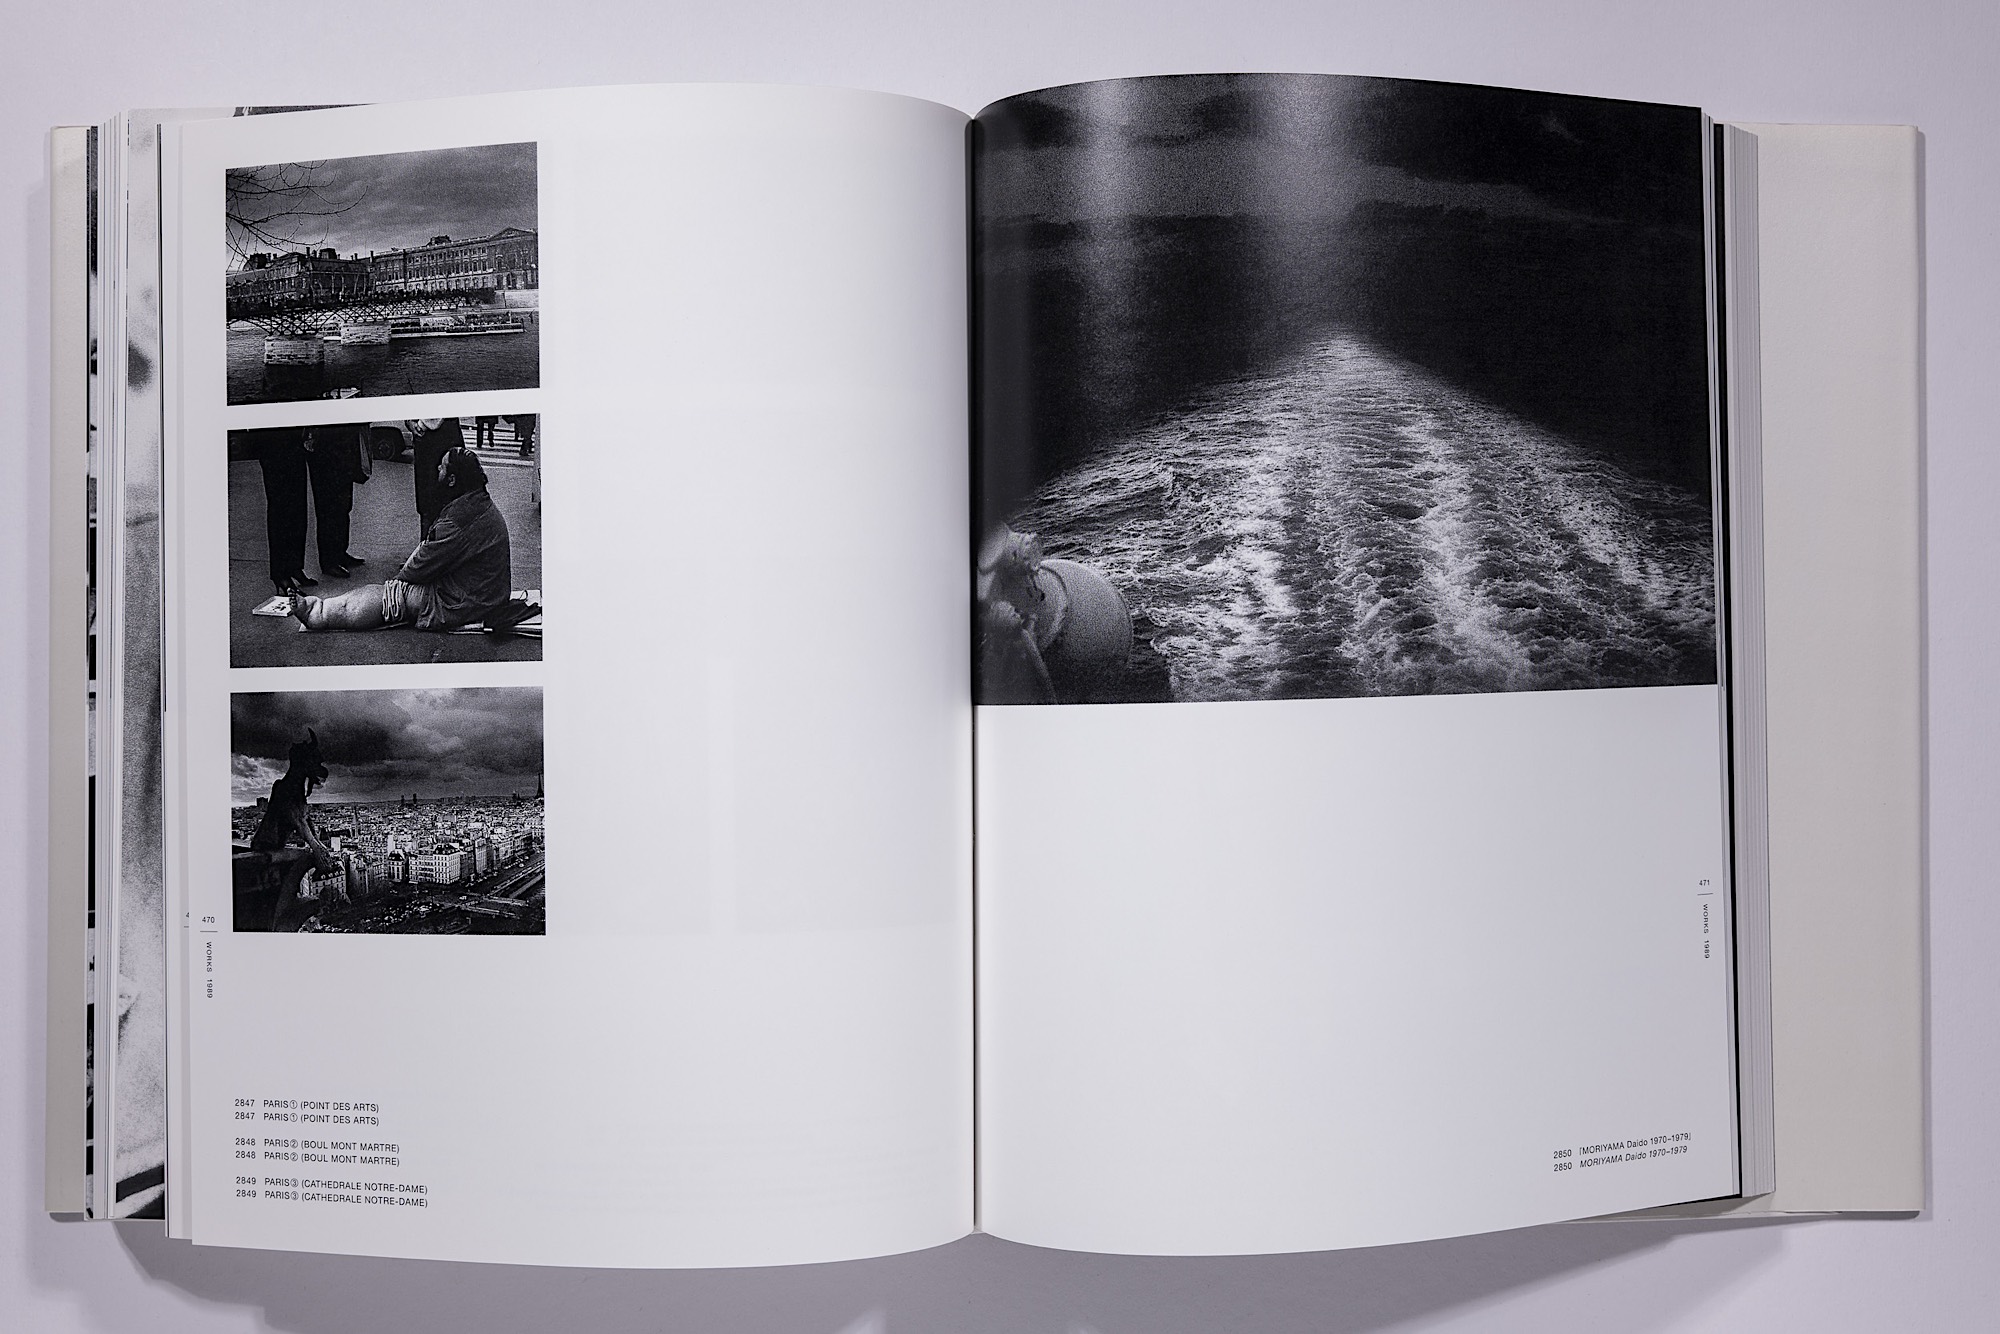 Daido Moriyama - The Complete Works of Daido Moriyama Image 55